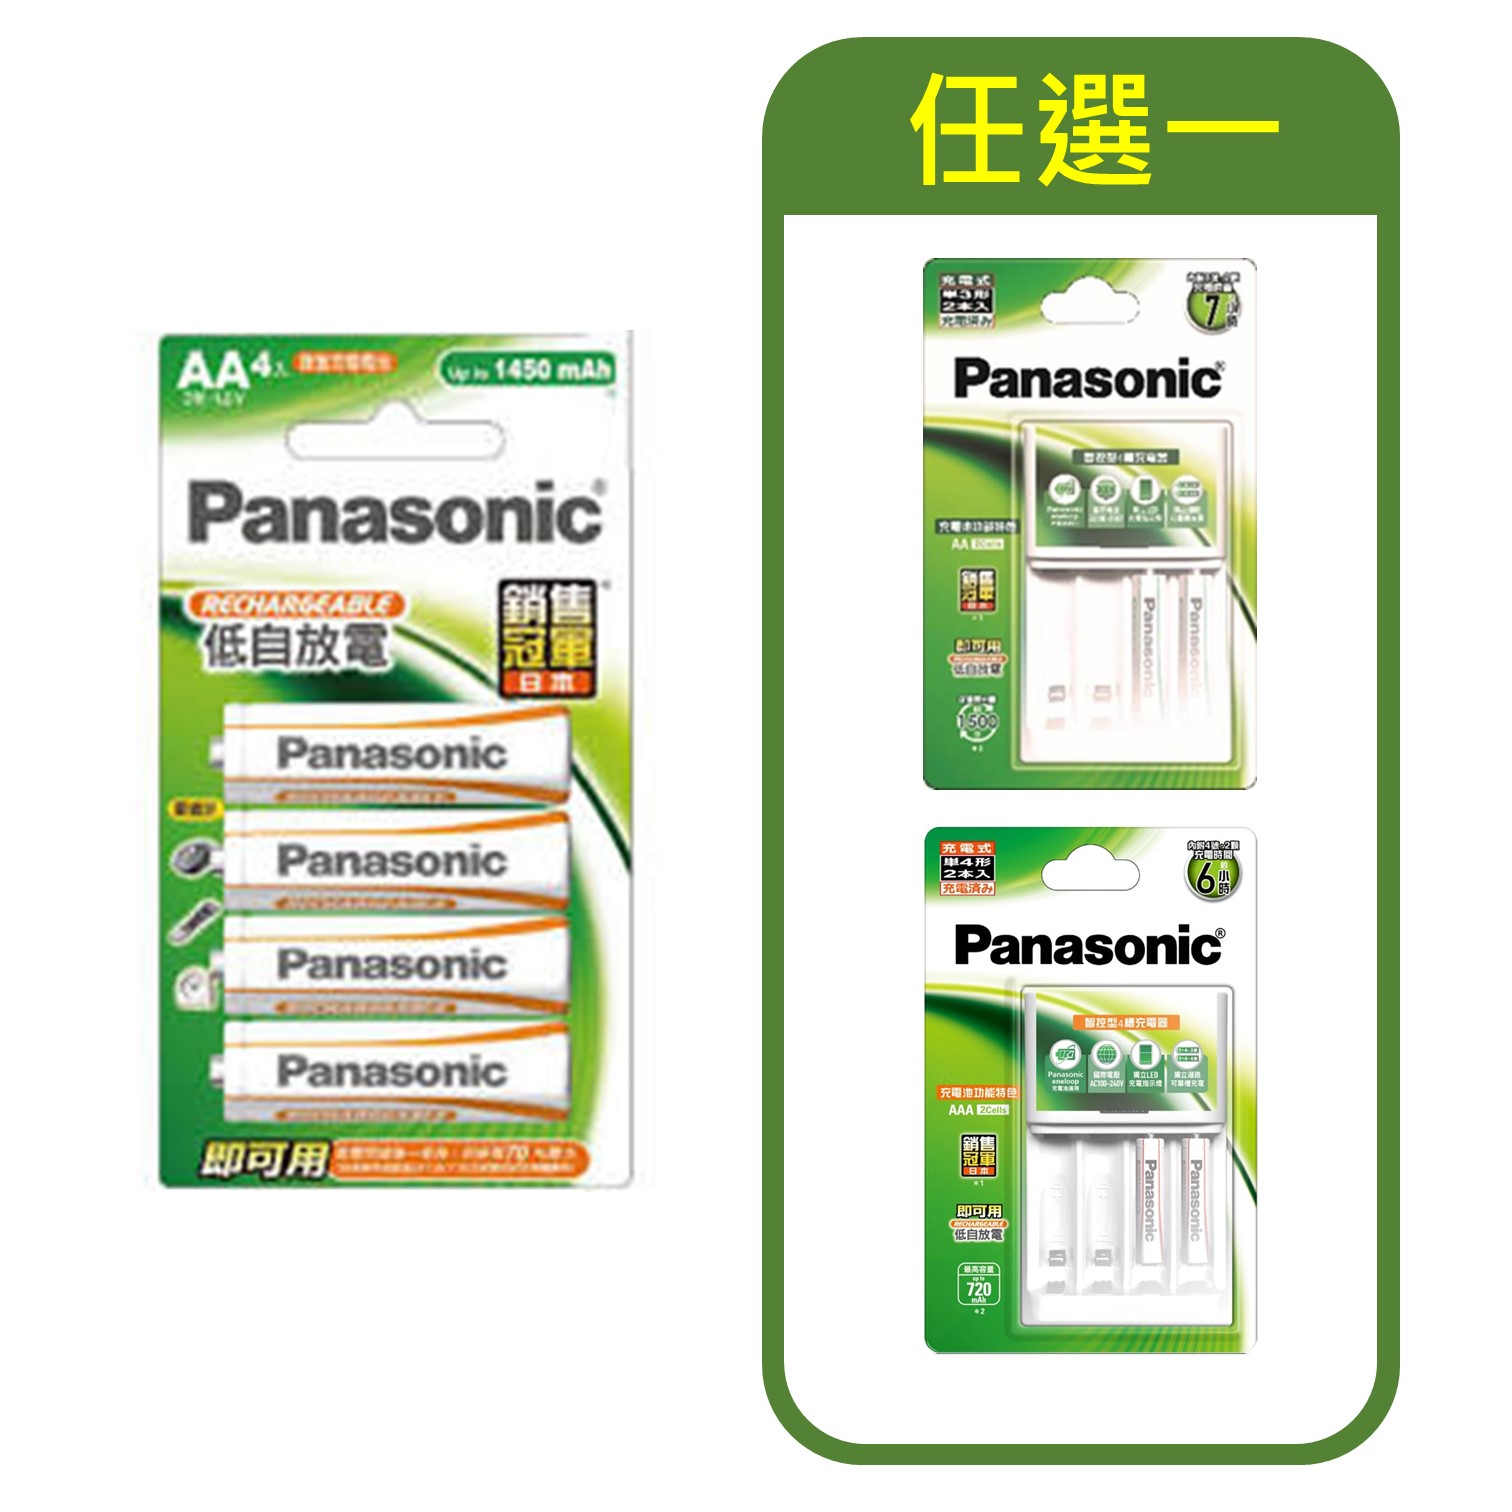 特惠組合 | 國際牌Panasonic 經濟型充電電池3號4入 + 智控型充電器+充電電池3號/4號2入(任選一)